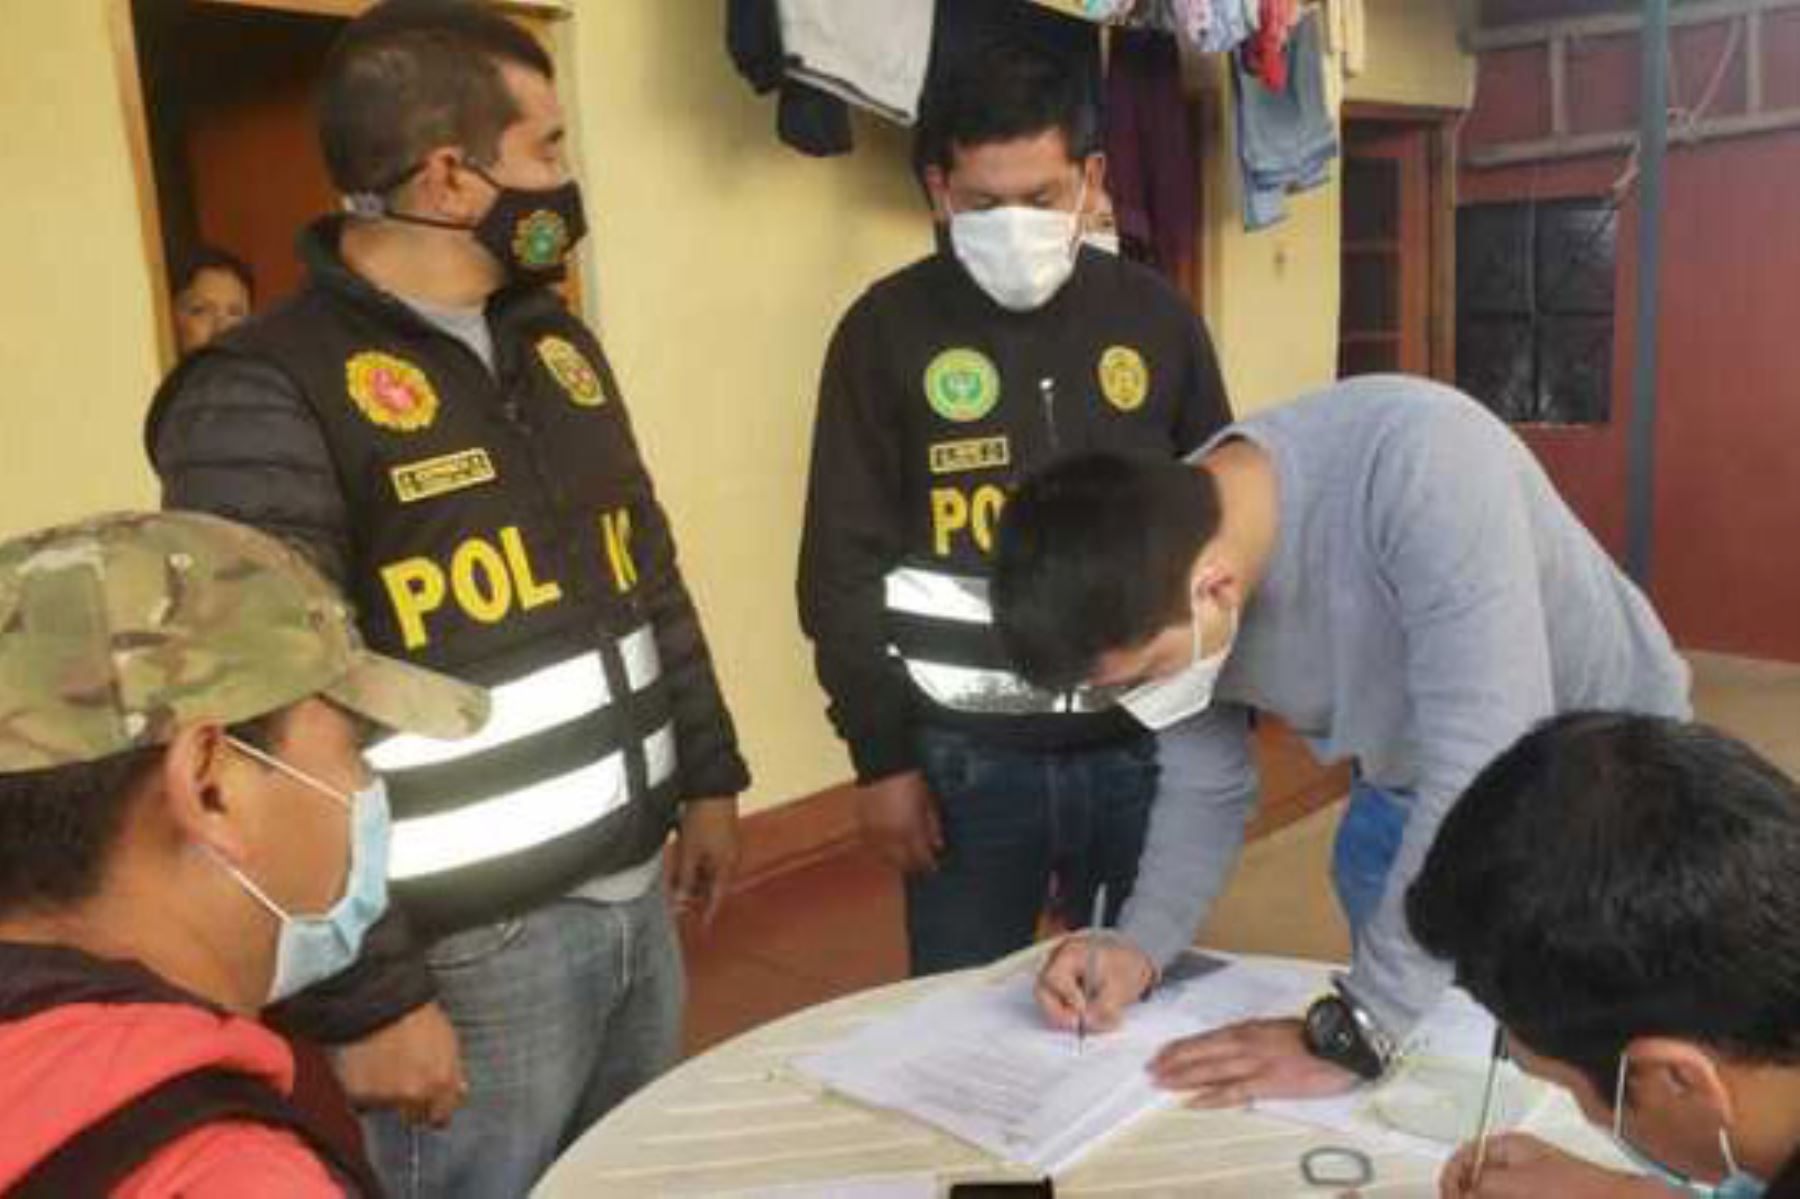 Tras un arduo trabajo de inteligencia, la PNP desarticuló una organización criminal que actuaba en Cajamarca, Trujillo y Lima. Foto: Ministerio del Interior